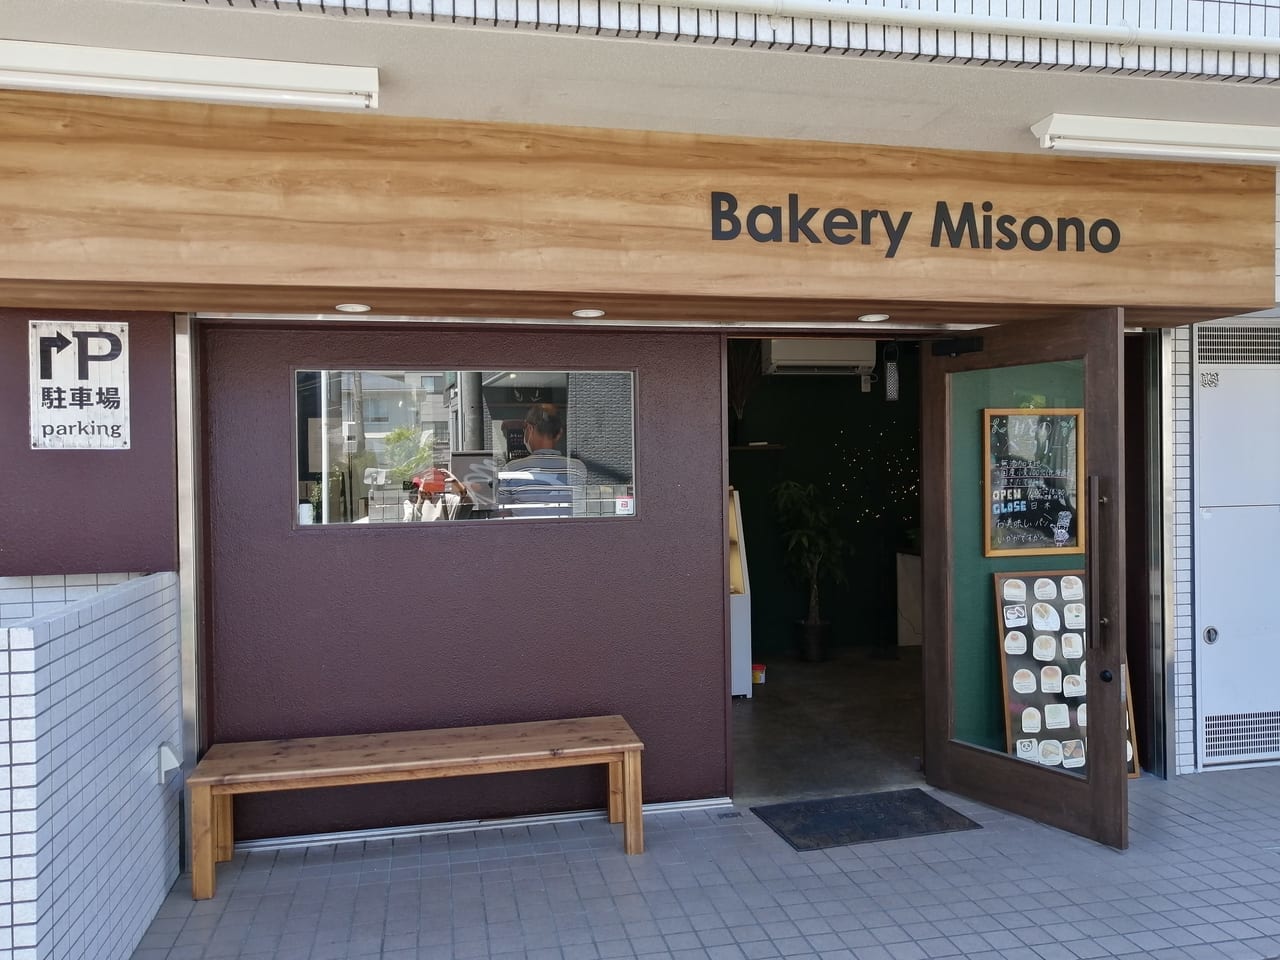 Bakery Misono